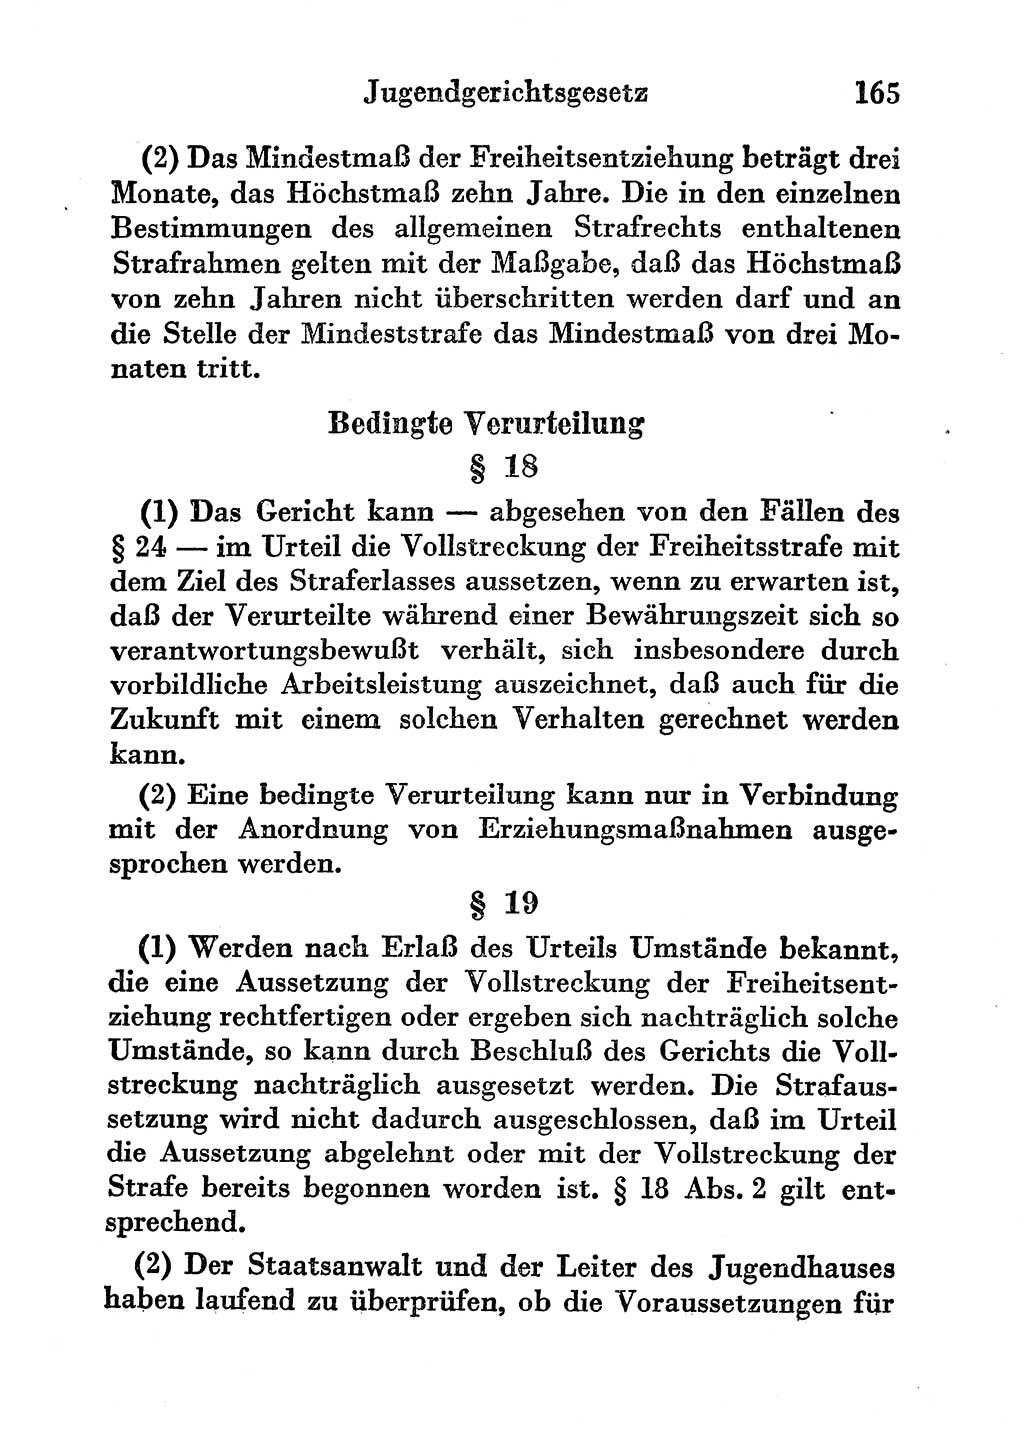 Strafgesetzbuch (StGB) und andere Strafgesetze [Deutsche Demokratische Republik (DDR)] 1956, Seite 165 (StGB Strafges. DDR 1956, S. 165)